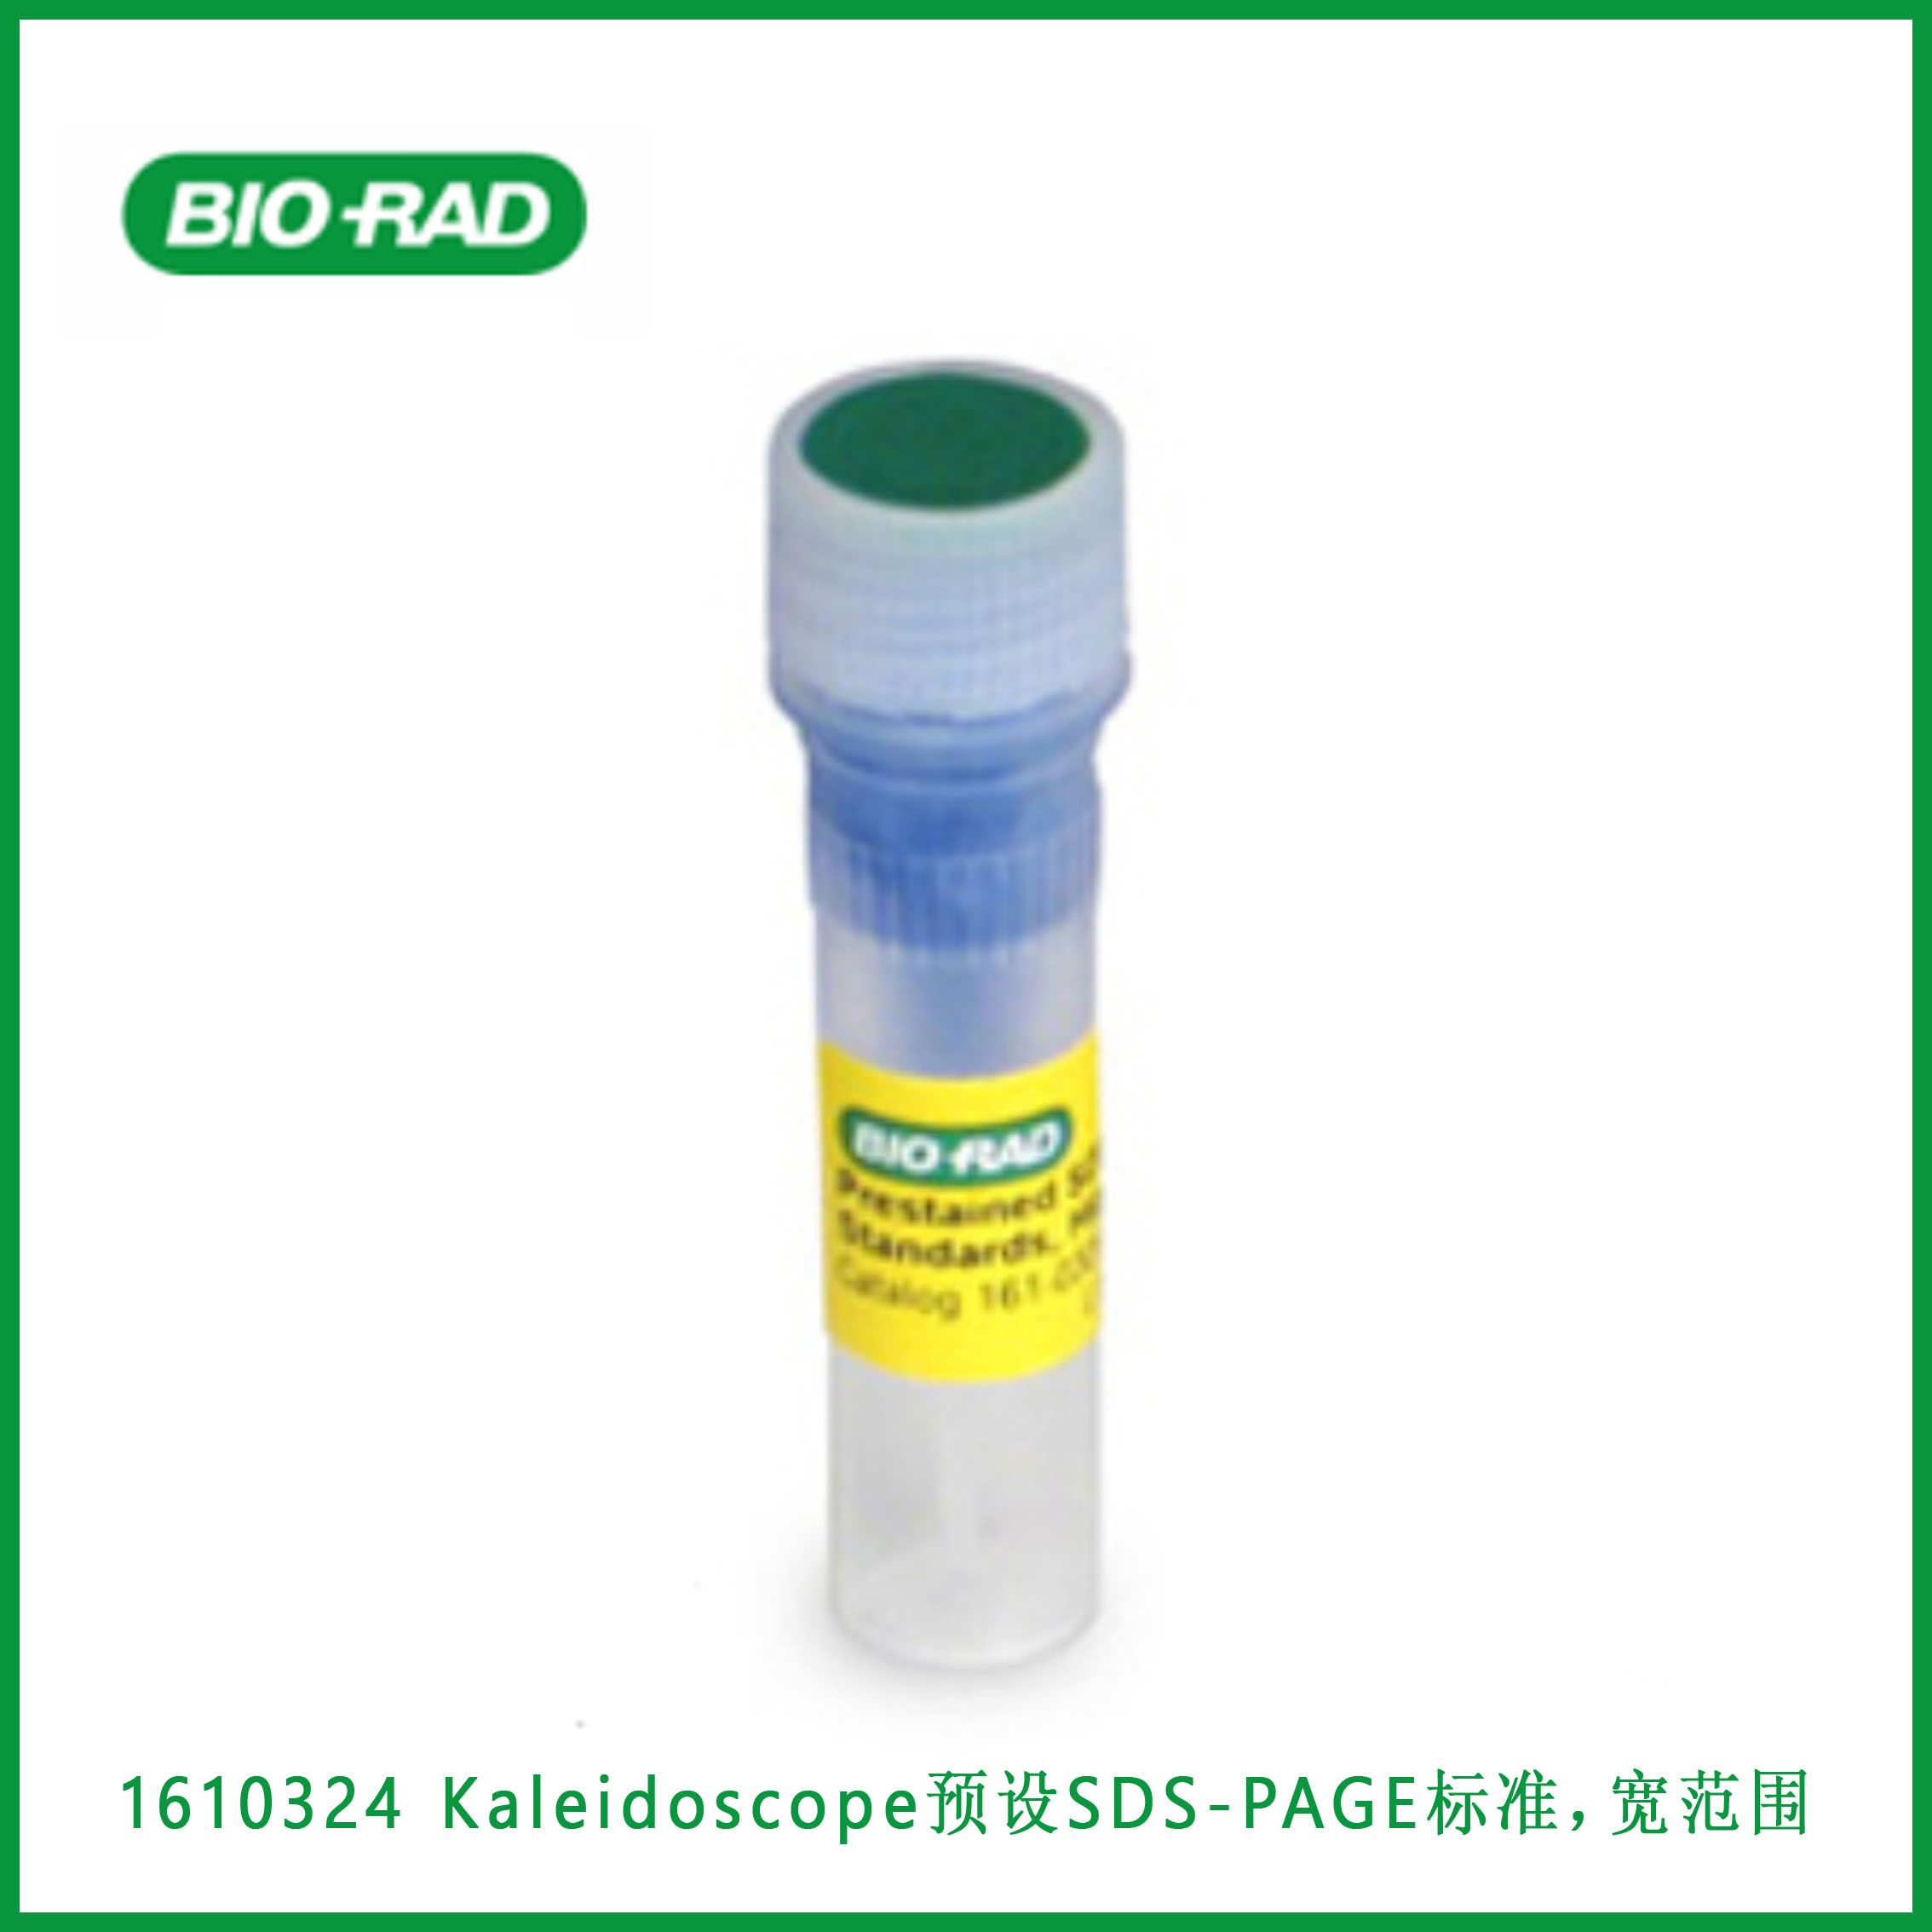 伯乐Bio-Rad1610324Kaleidoscope™ Prestained SDS-PAGE Standards, broad range, 500 μl， Kaleidoscope™  预设SDS-PAGE标准，宽范围，500μl,现货